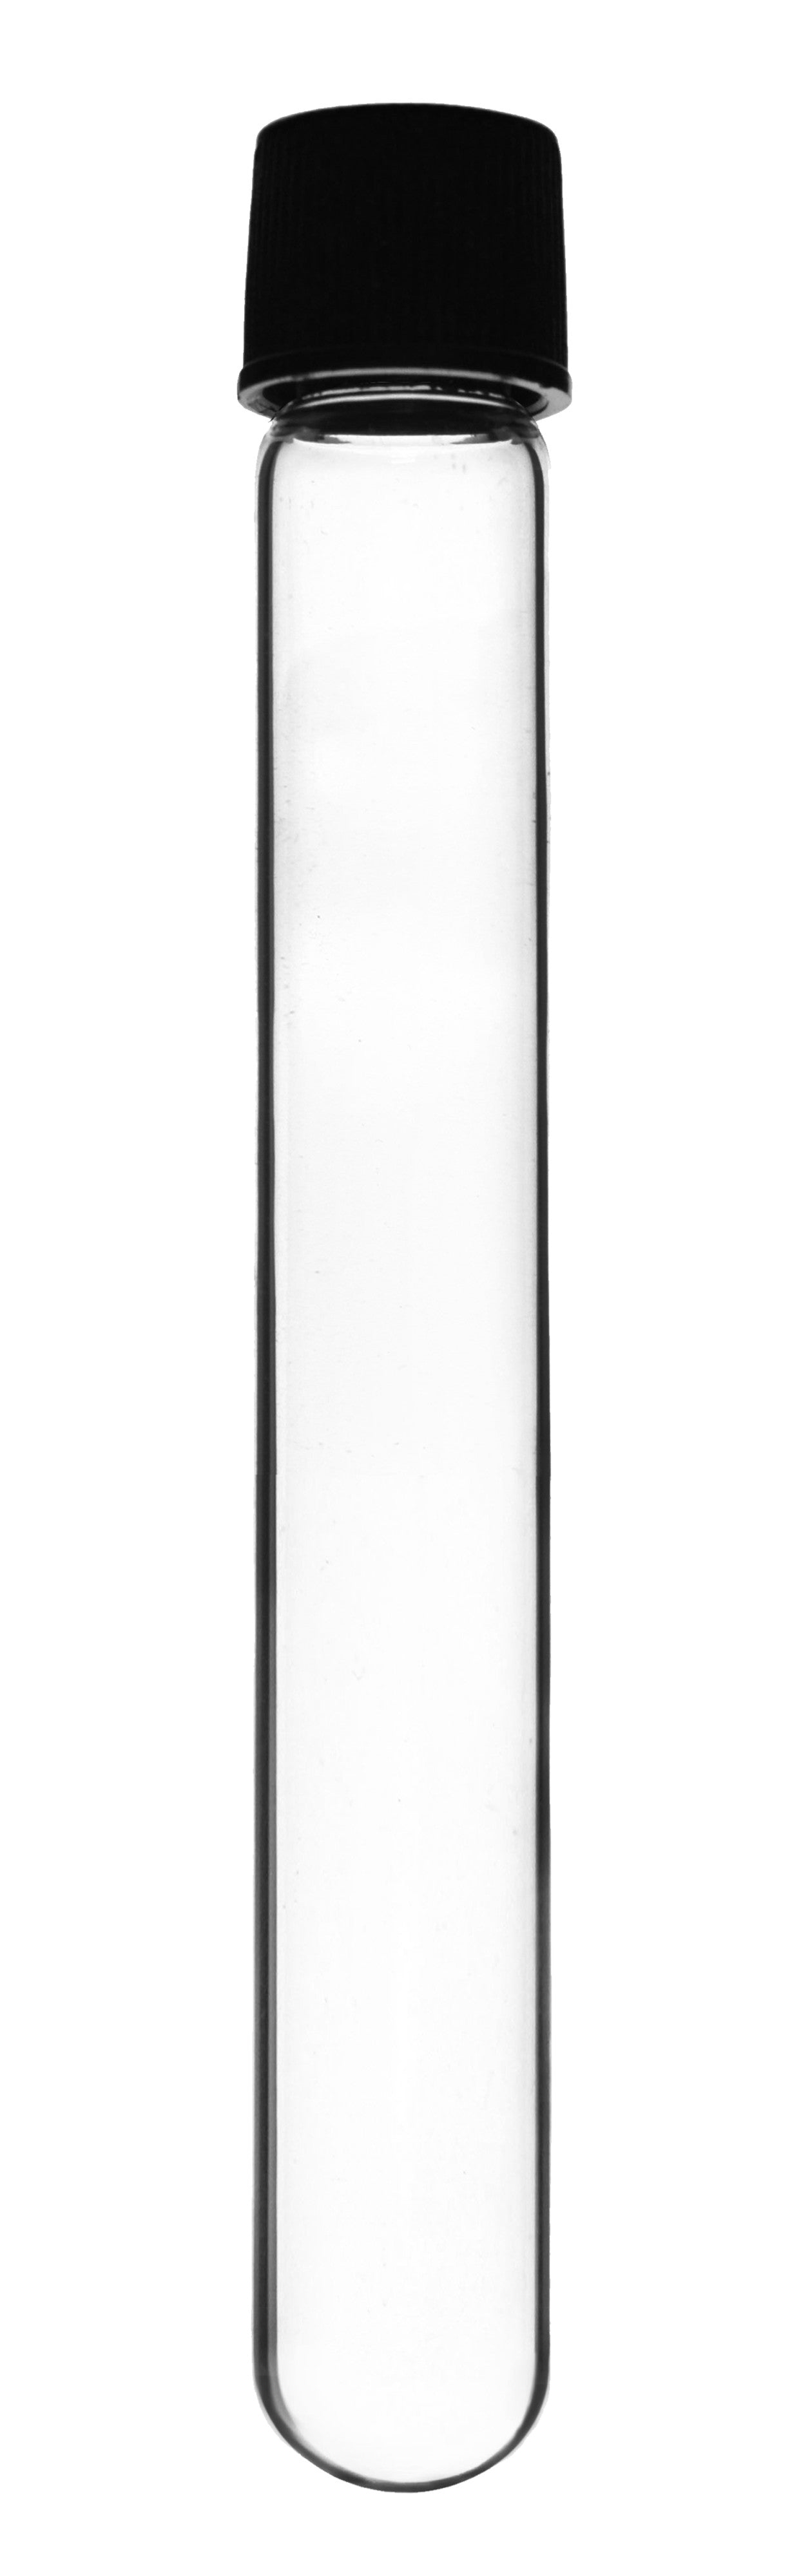 Borosilicate Glass Test Tubes, 25 ml, Round Bottom with Screw Cap